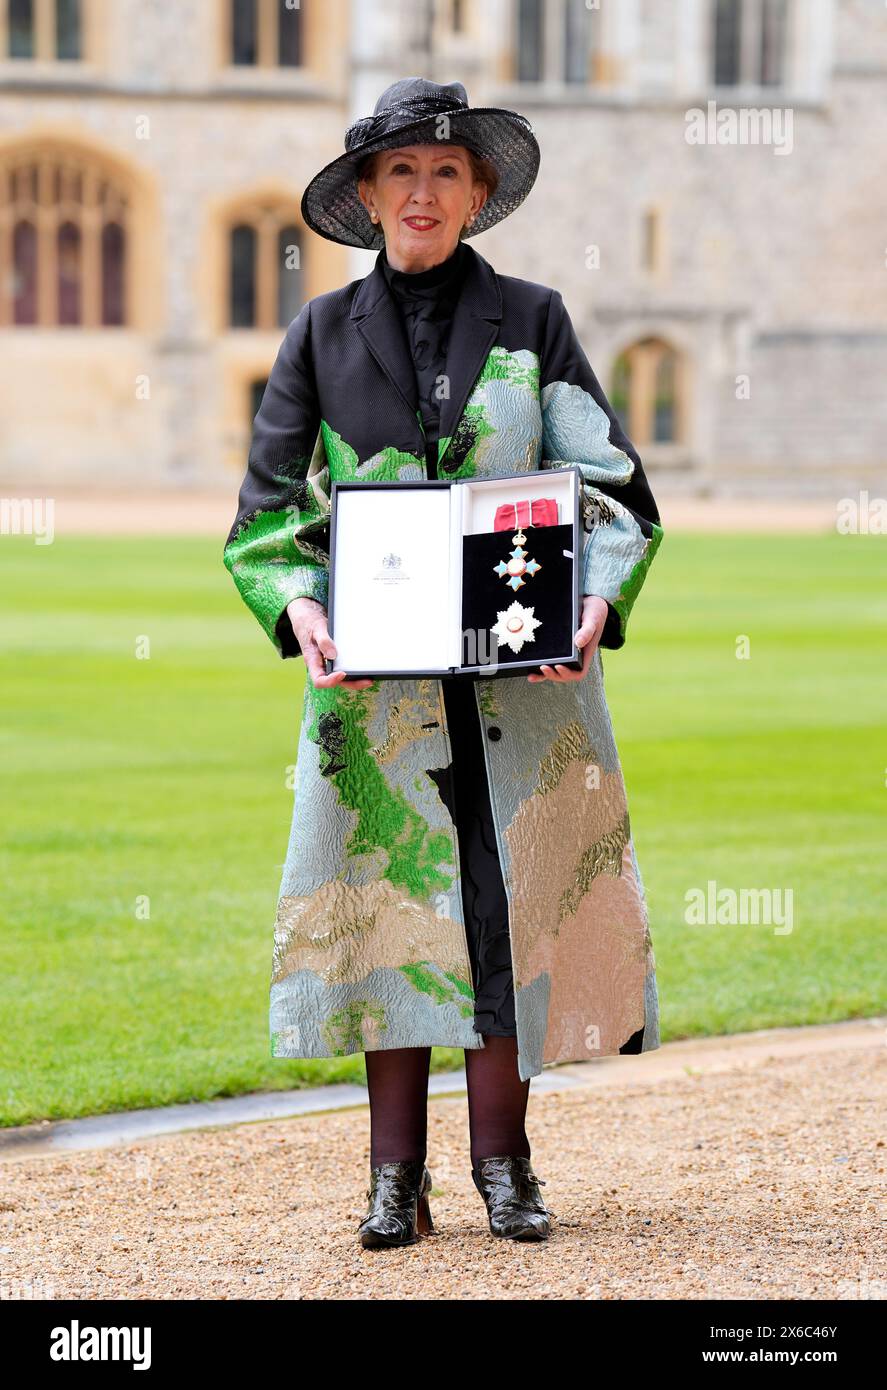 Die Labour-Abgeordnete Dame Margaret Beckett wurde von König Karl III. In Windsor Castle in Berkshire zum Dame Grand Cross ernannt. Bilddatum: Dienstag, 14. Mai 2024. Stockfoto